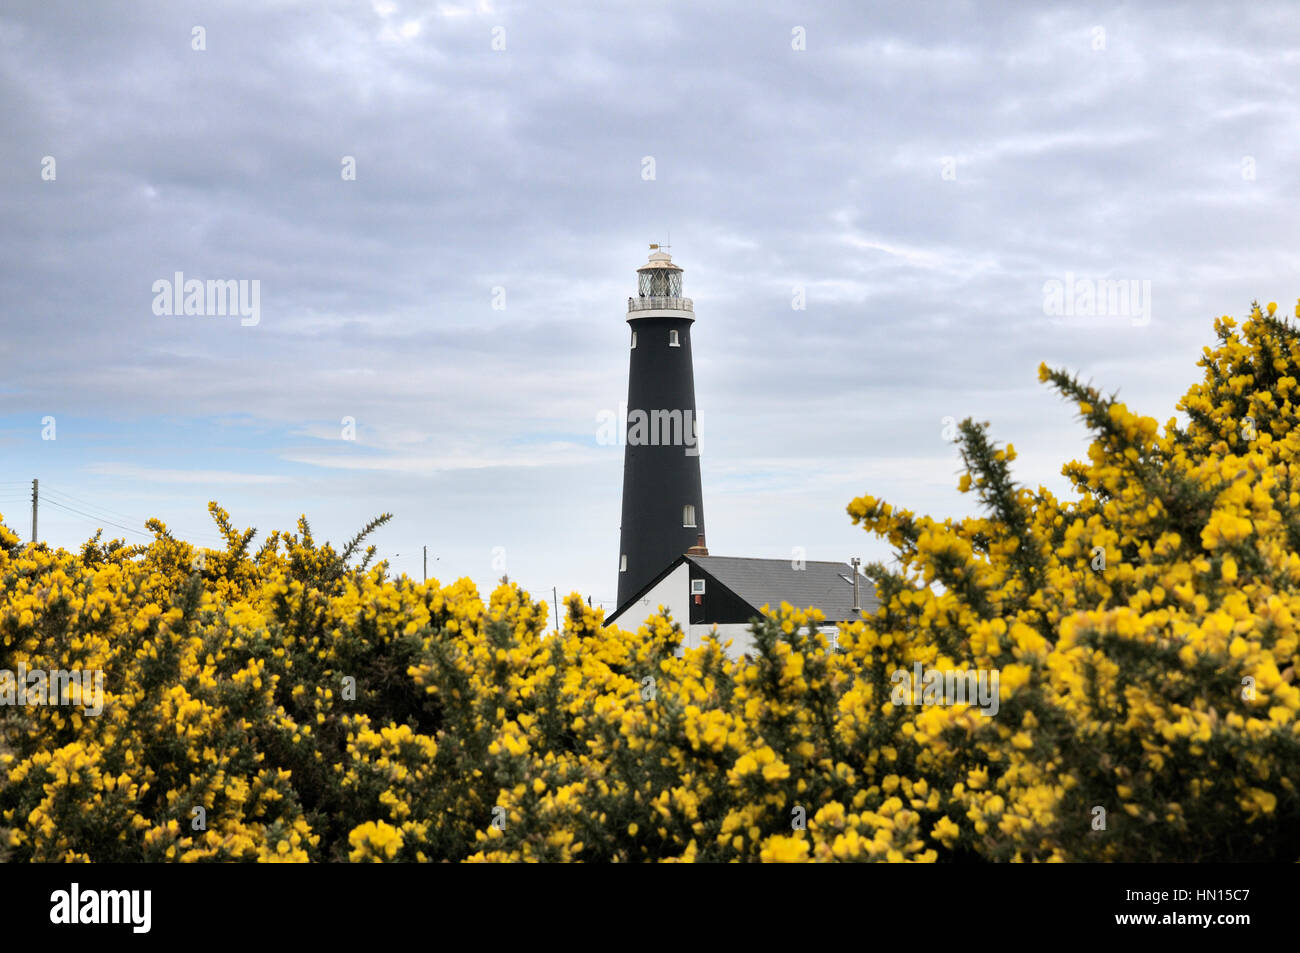 Le vieux phare à s'élever au-dessus des dormeurs une profusion de fleurs d'ajoncs jaune, Kent, England, UK Banque D'Images